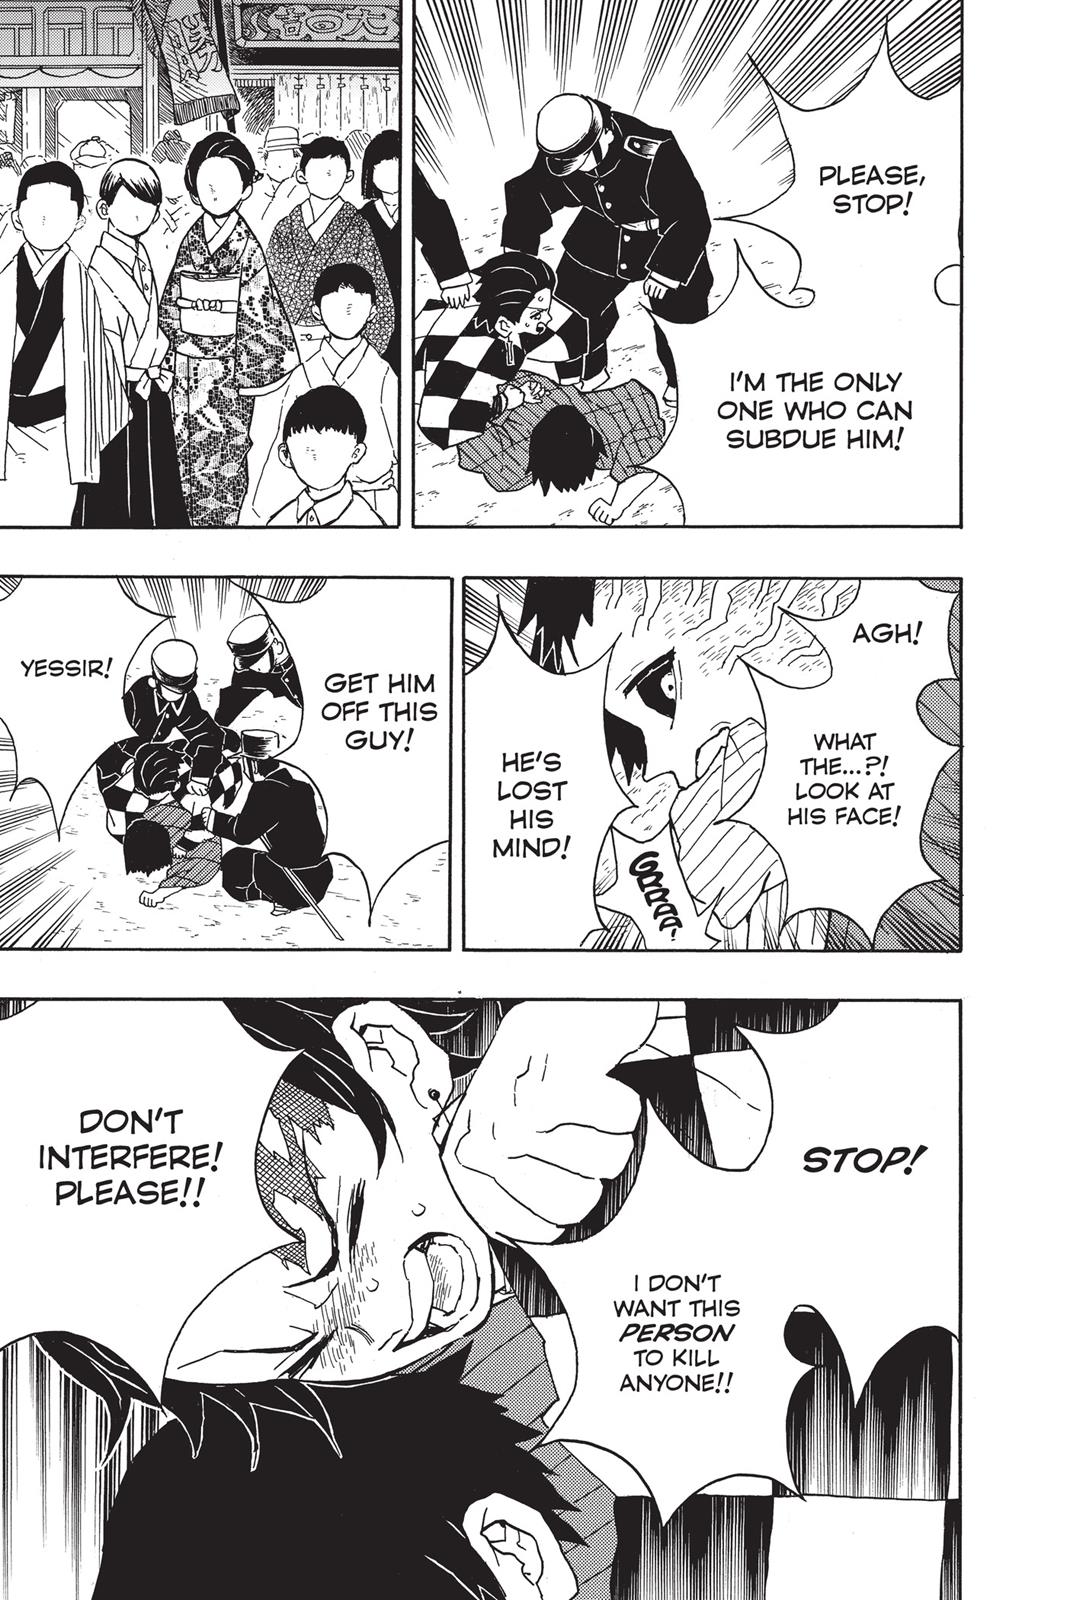 Demon Slayer Manga Manga Chapter - 14 - image 7